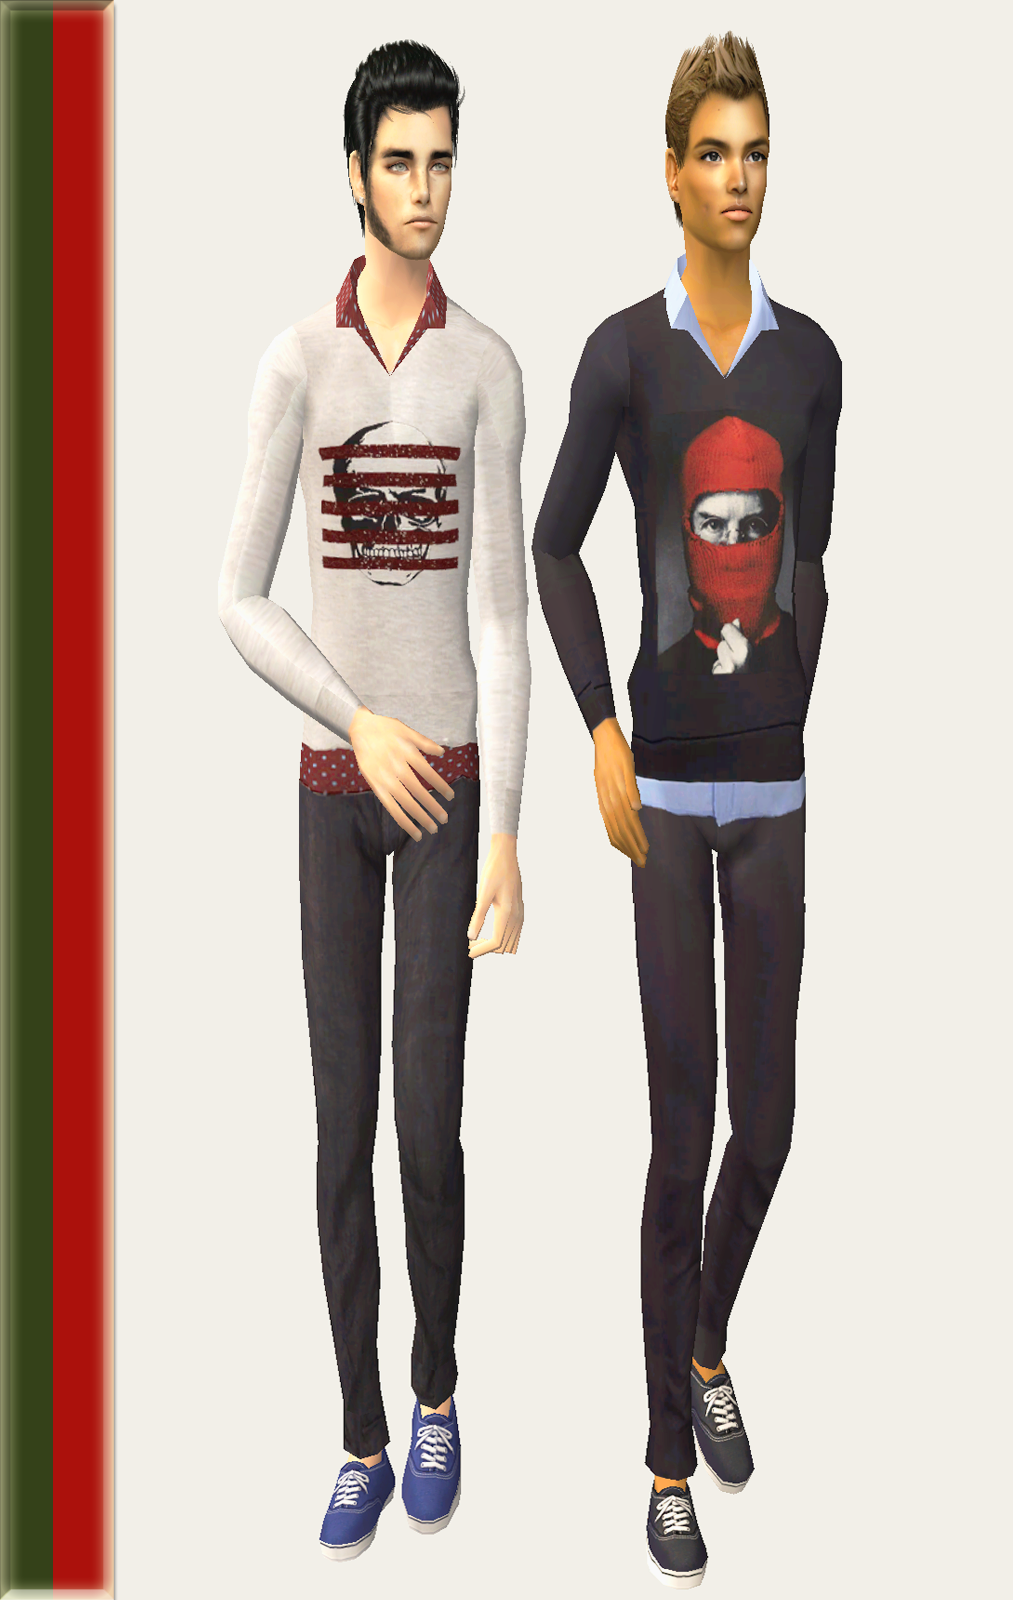  The Sims 2. Мужская одежда: повседневная. - Страница 22 Gift-3